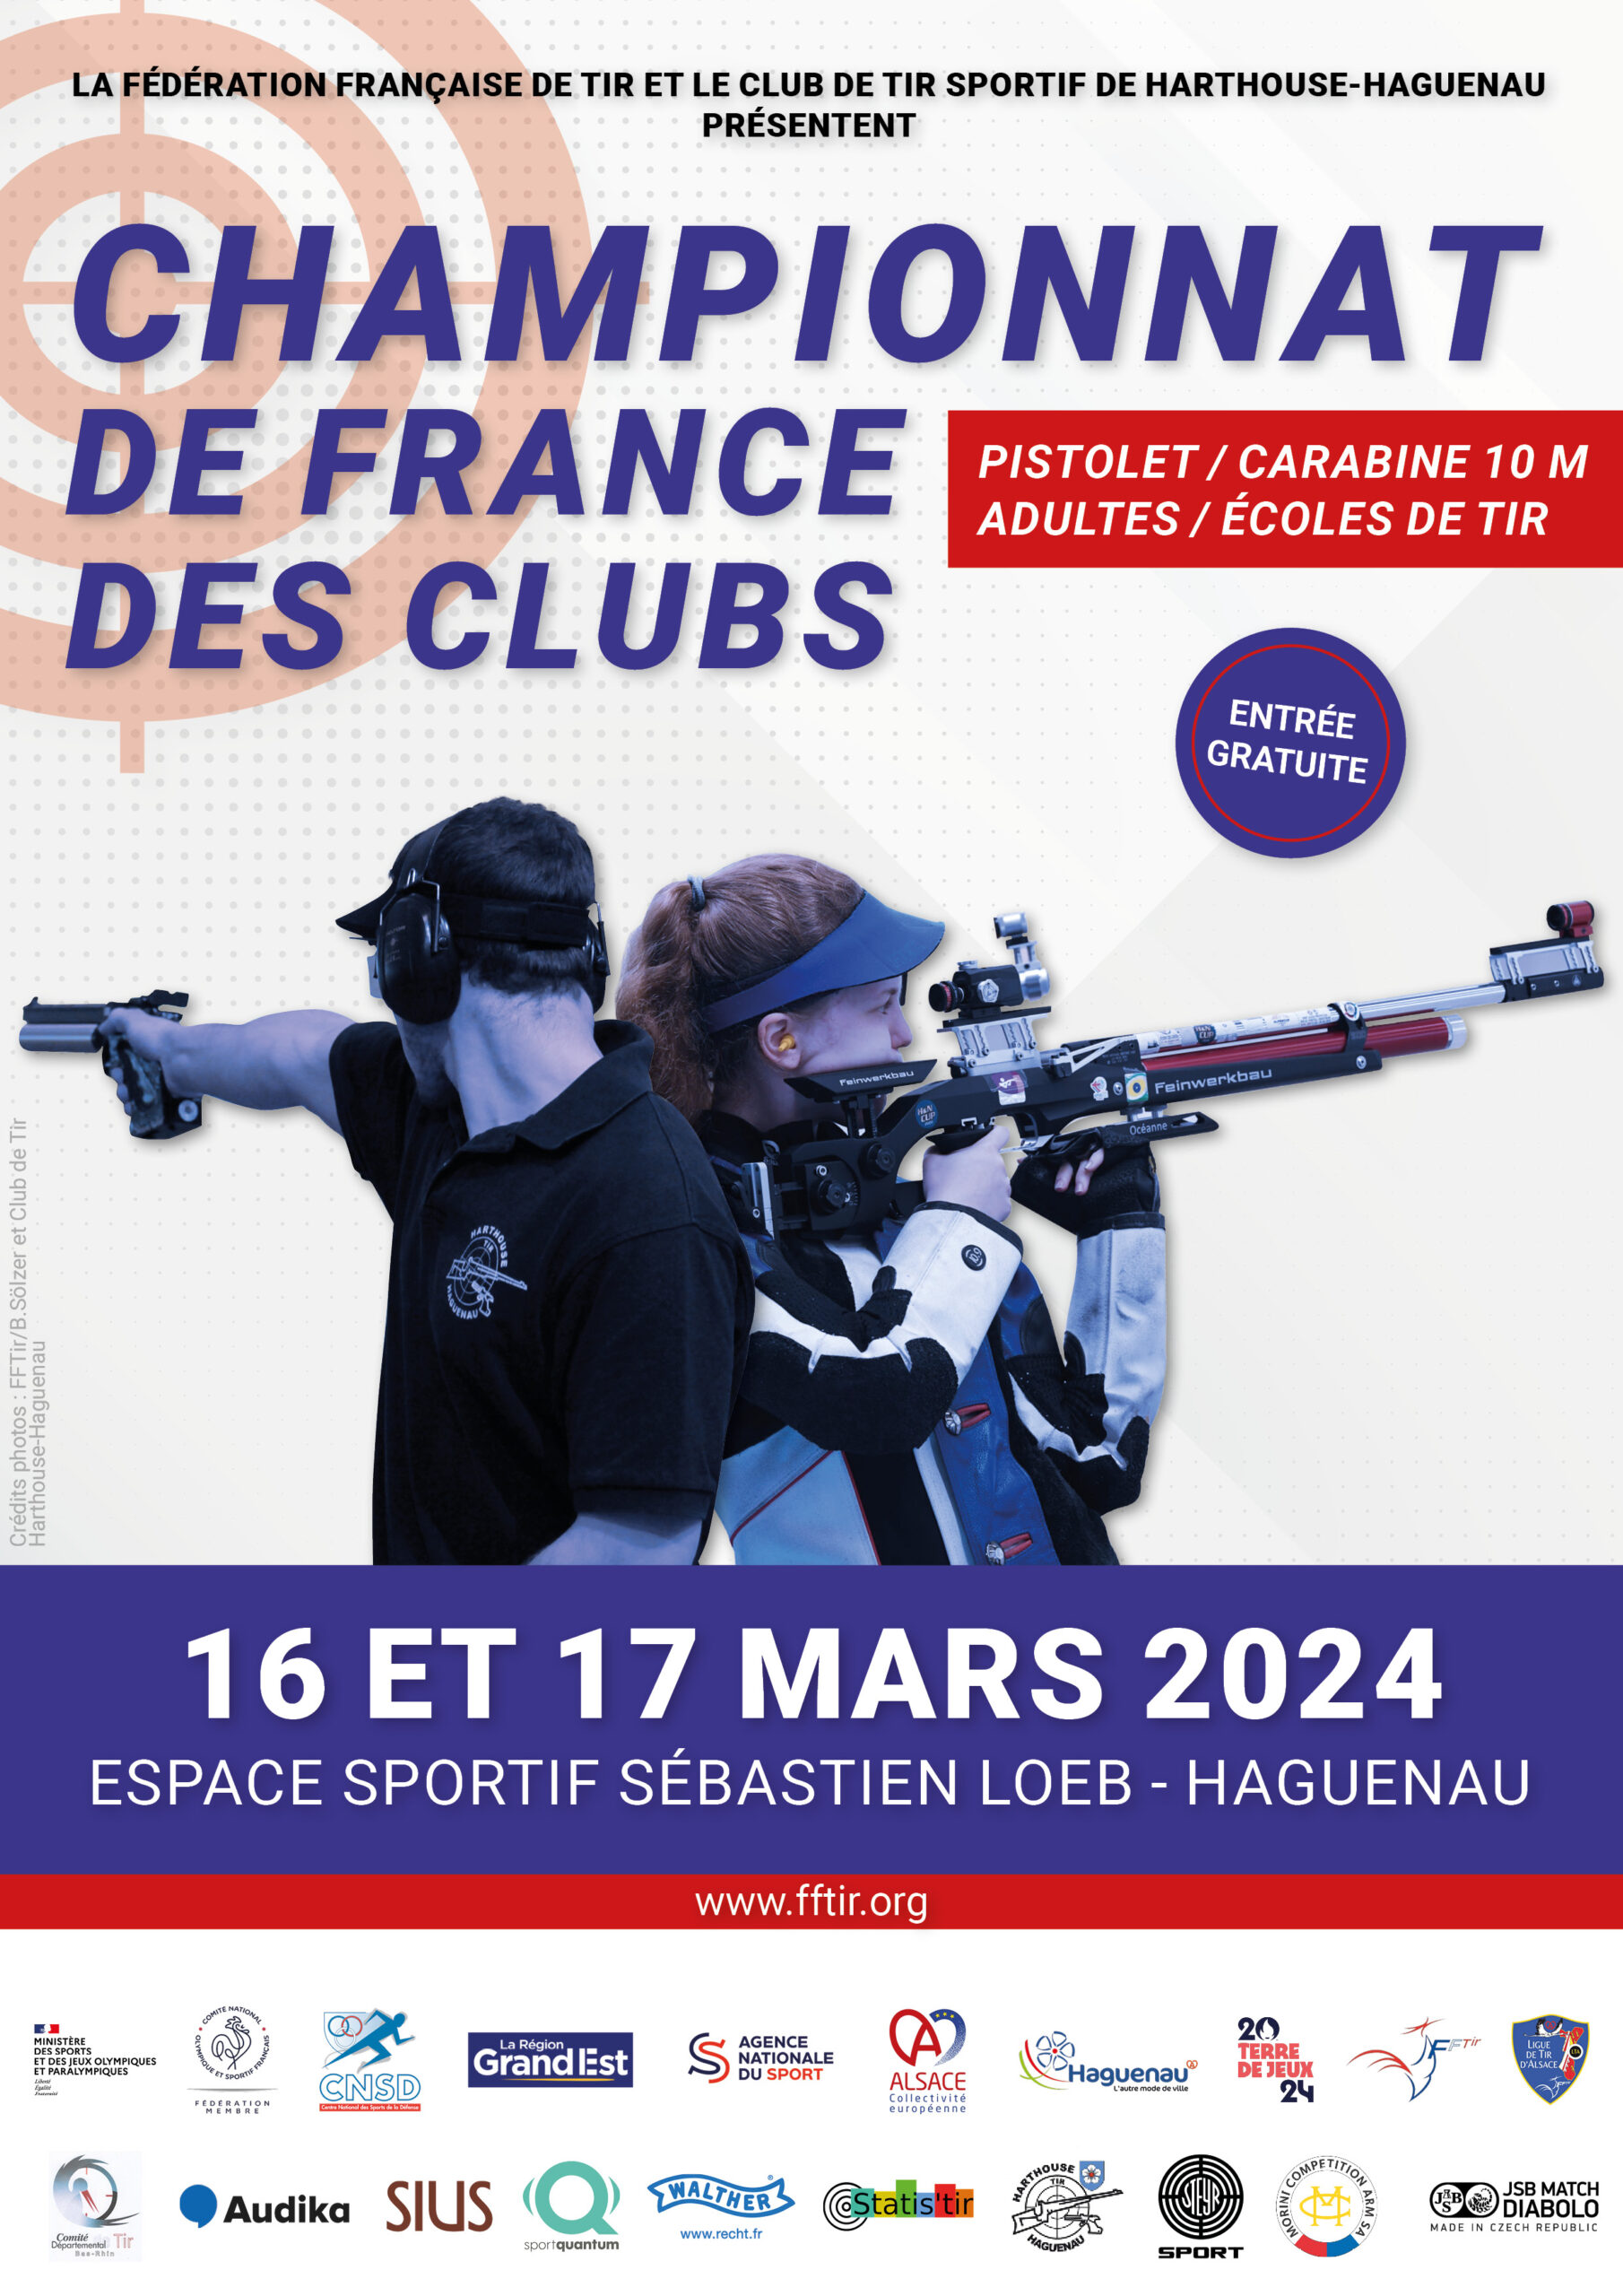 Championnat de France des clubs de tir